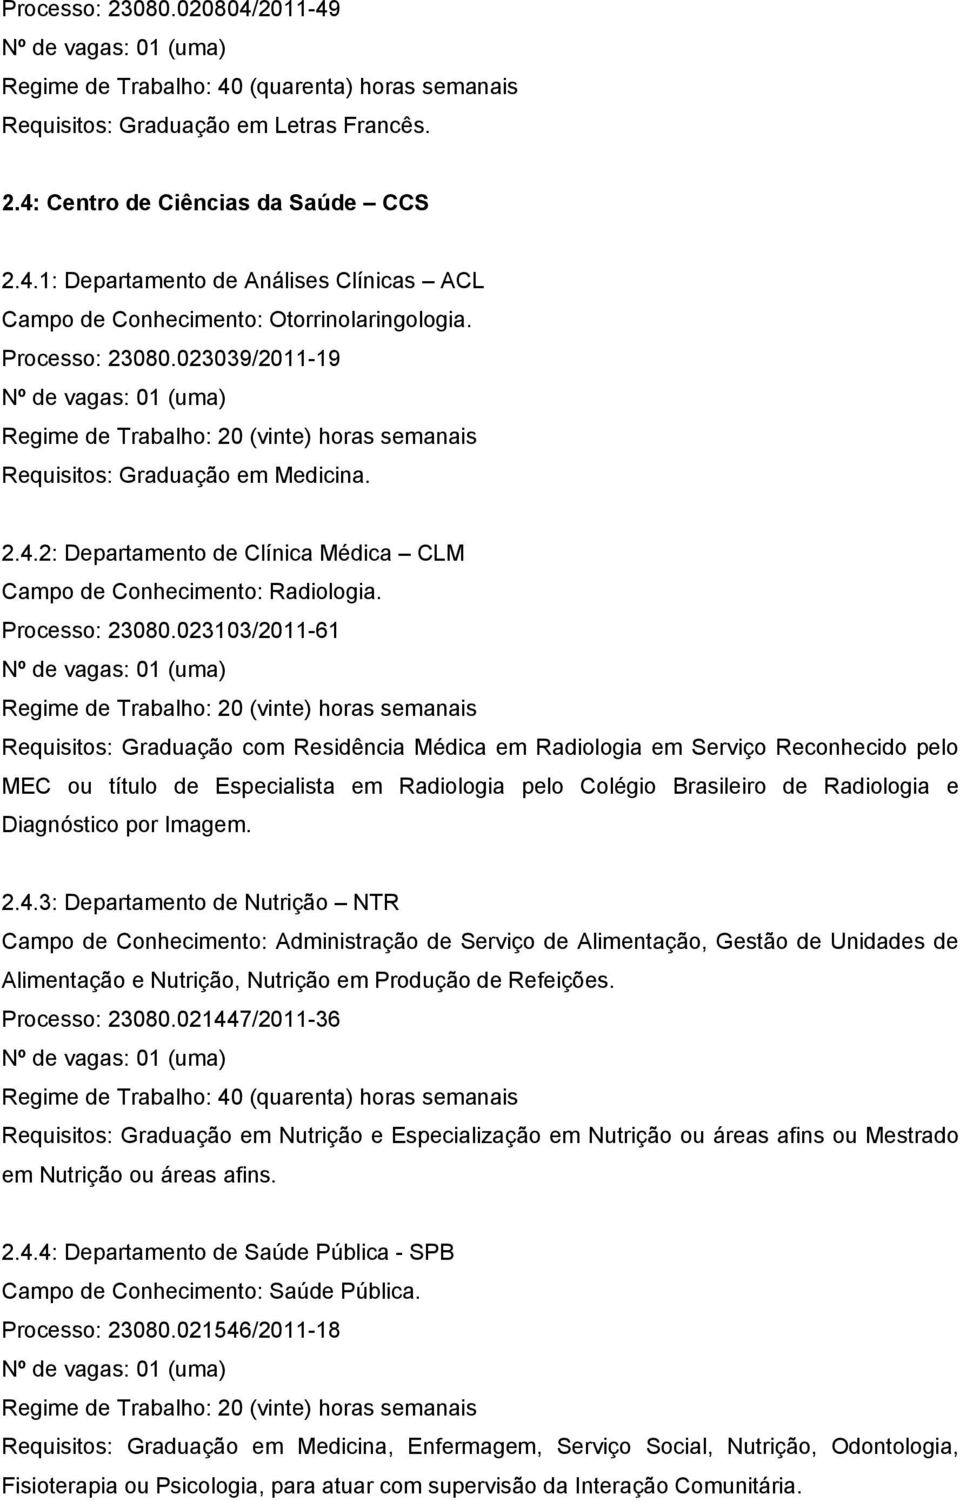 023103/2011-61 Requisitos: Graduação com Residência Médica em Radiologia em Serviço Reconhecido pelo MEC ou título de Especialista em Radiologia pelo Colégio Brasileiro de Radiologia e Diagnóstico